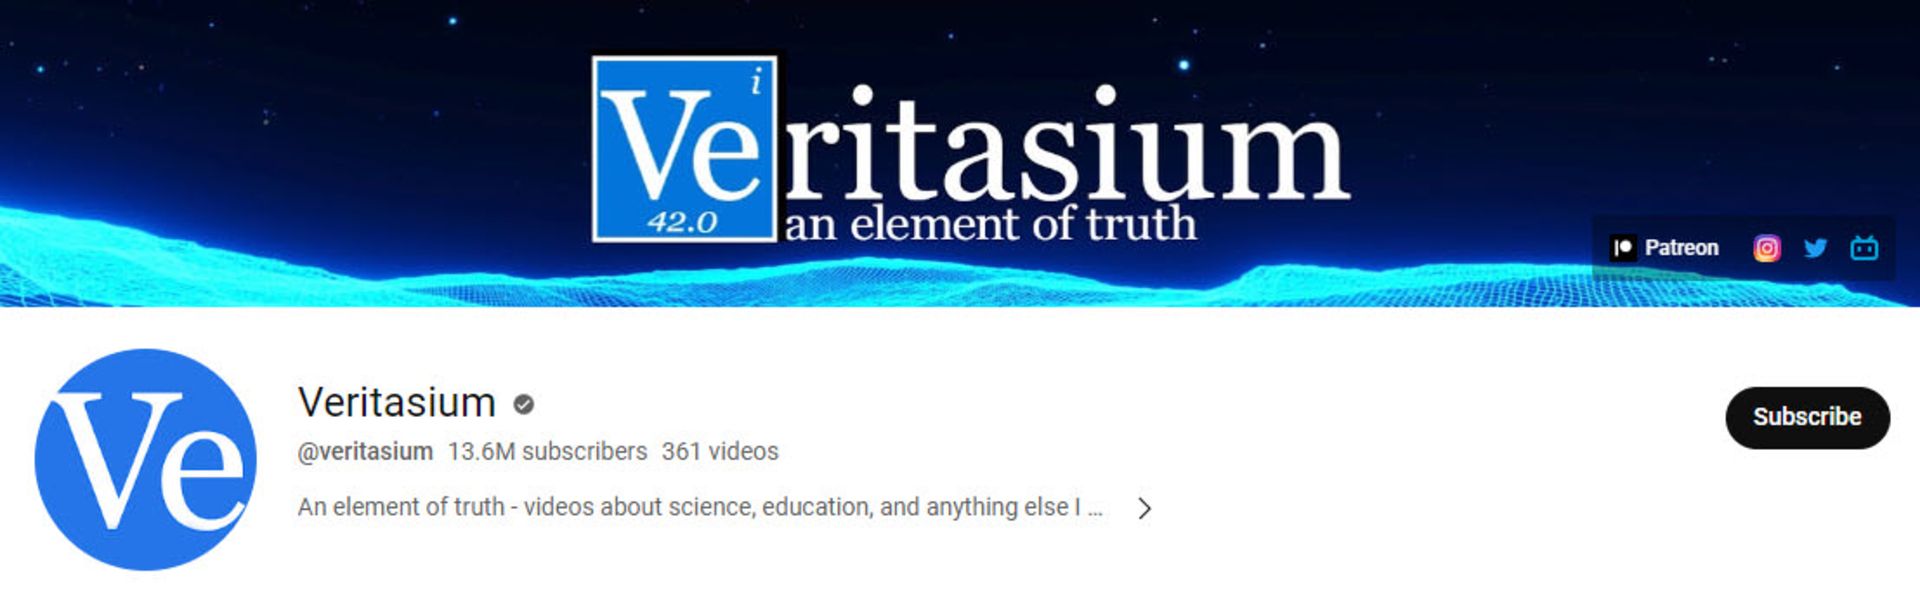 کانال یوتیوب Veritasium